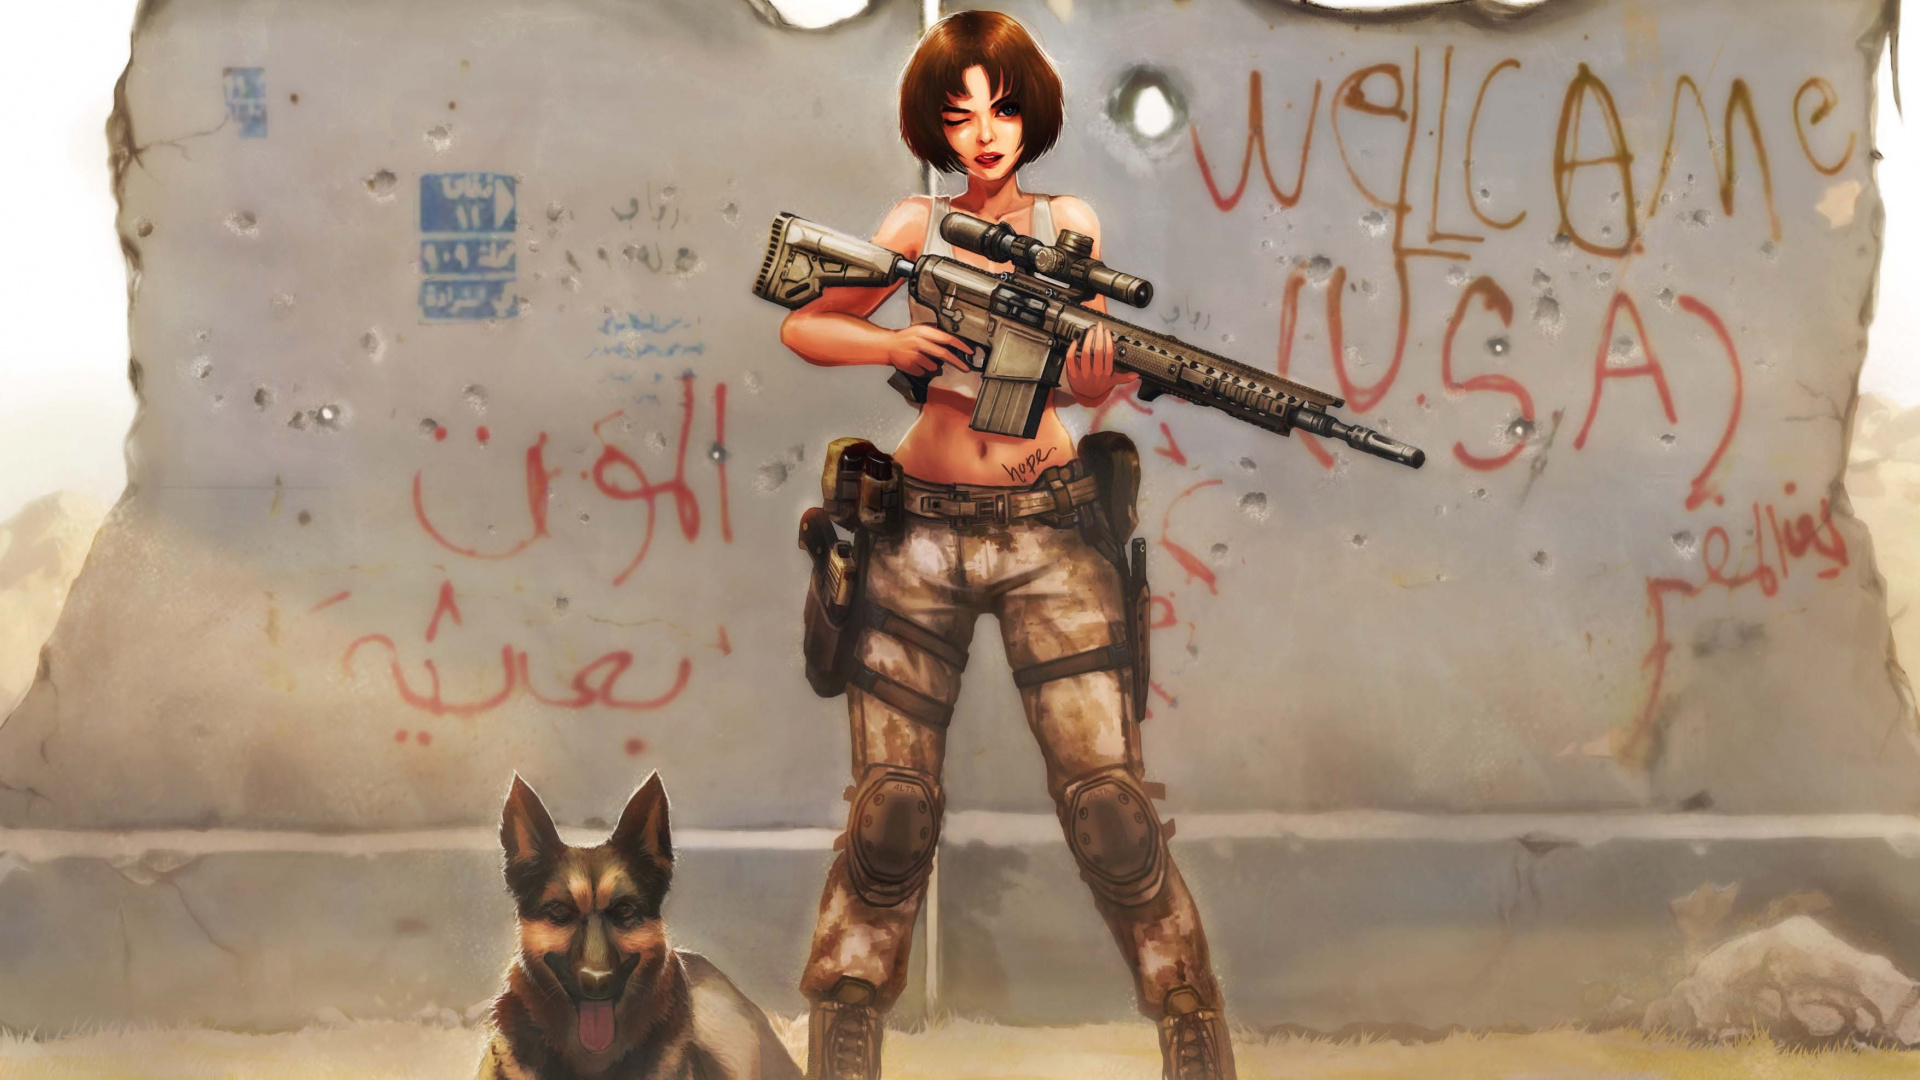 看门狗, 厚厚的土, 女孩的枪, 武器, 虚构的人物 壁纸 1920x1080 允许